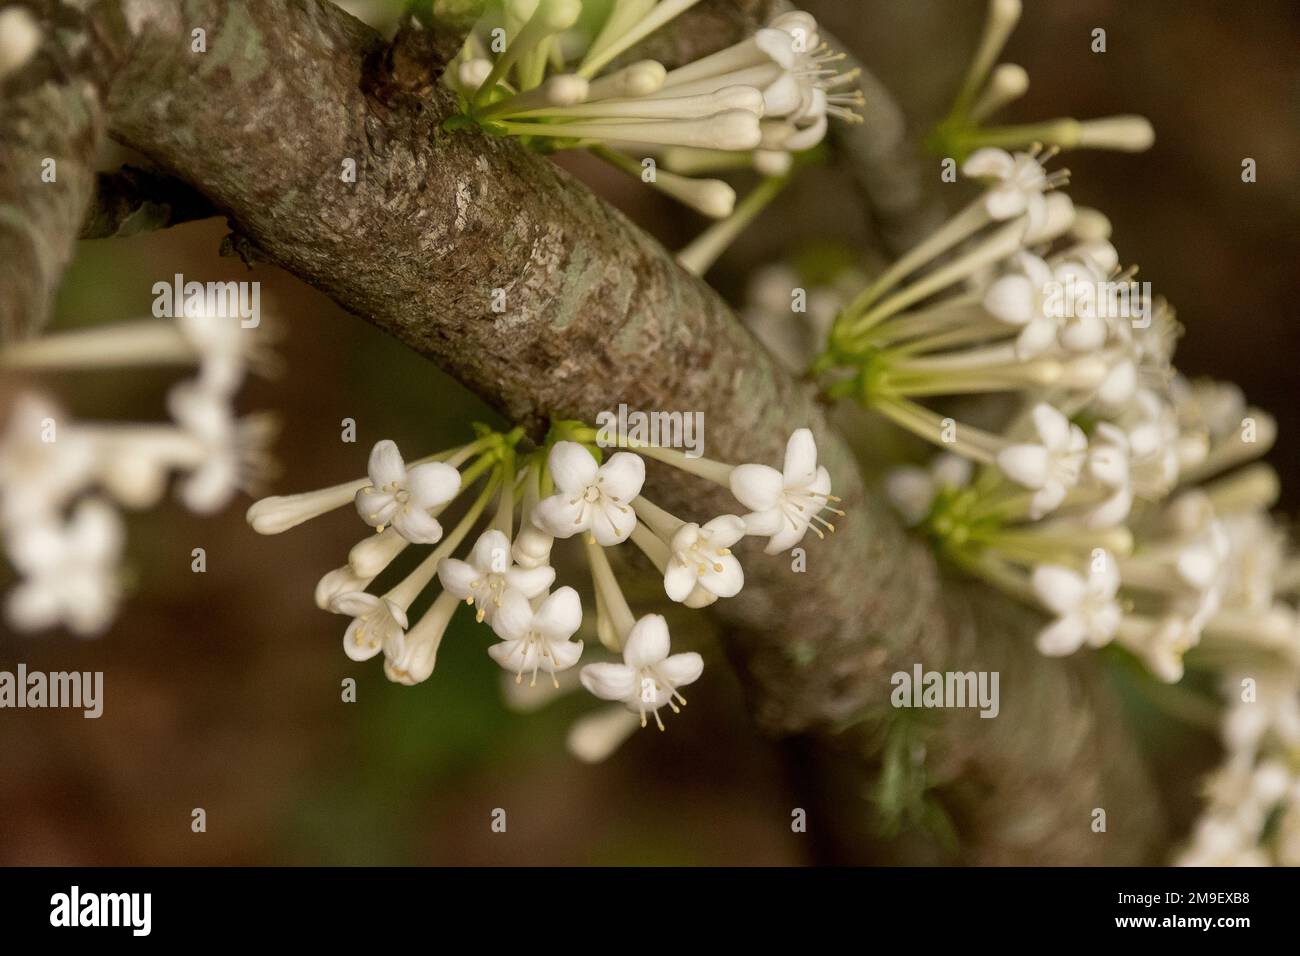 Blüte aus australischem weißen euodia-Baum, melicope Micrococca, weißes Doughwood, das direkt auf Holz wächst. Queensland Garden. Stockfoto